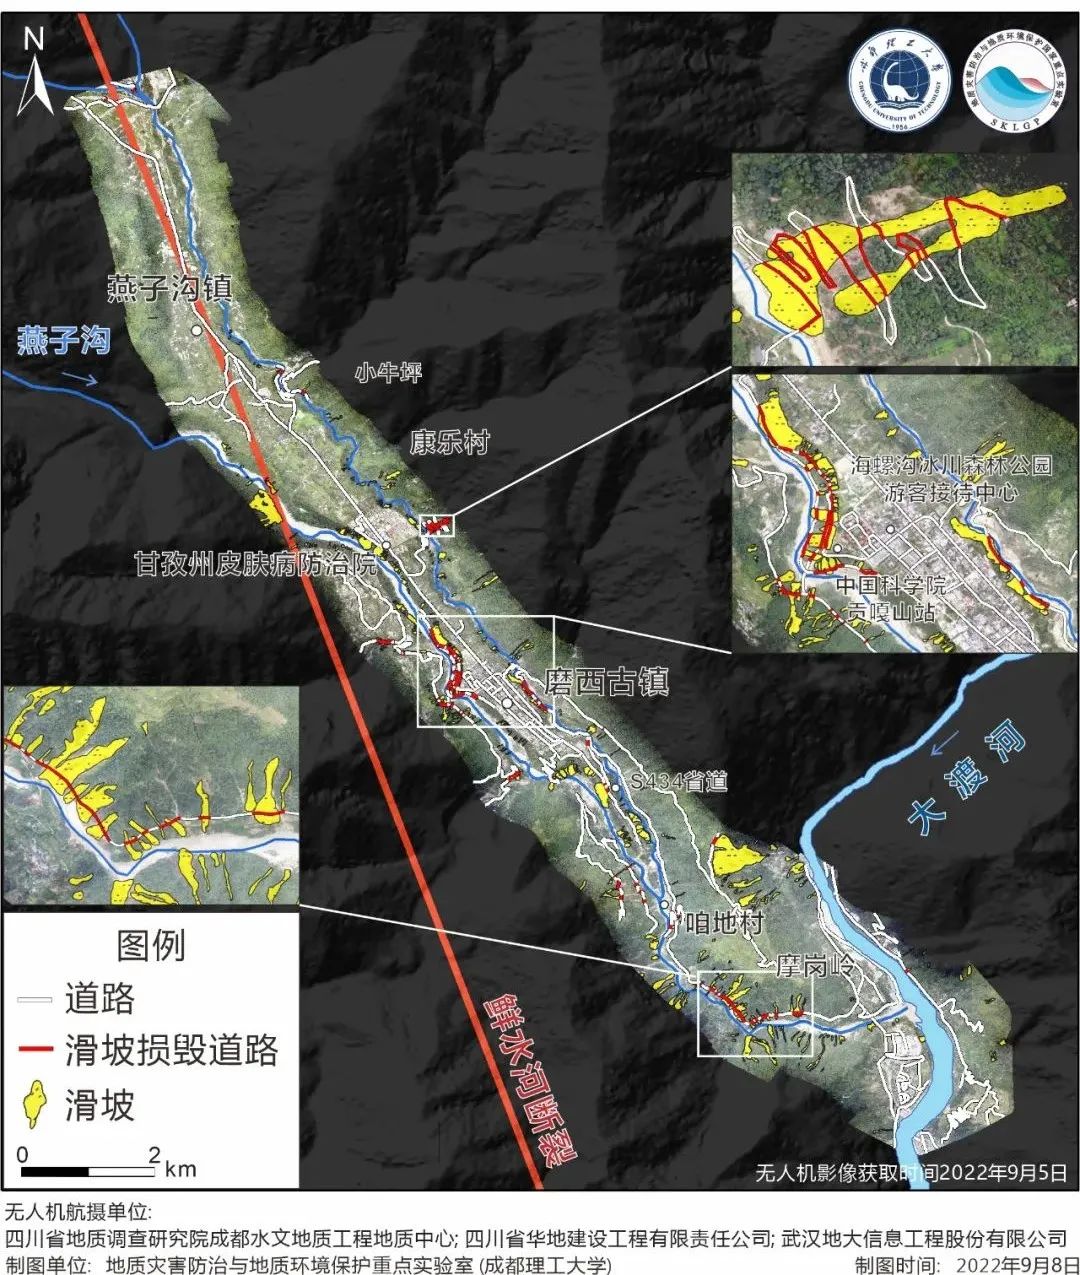 磨西镇周边道路损毁遥感监测图.jpg